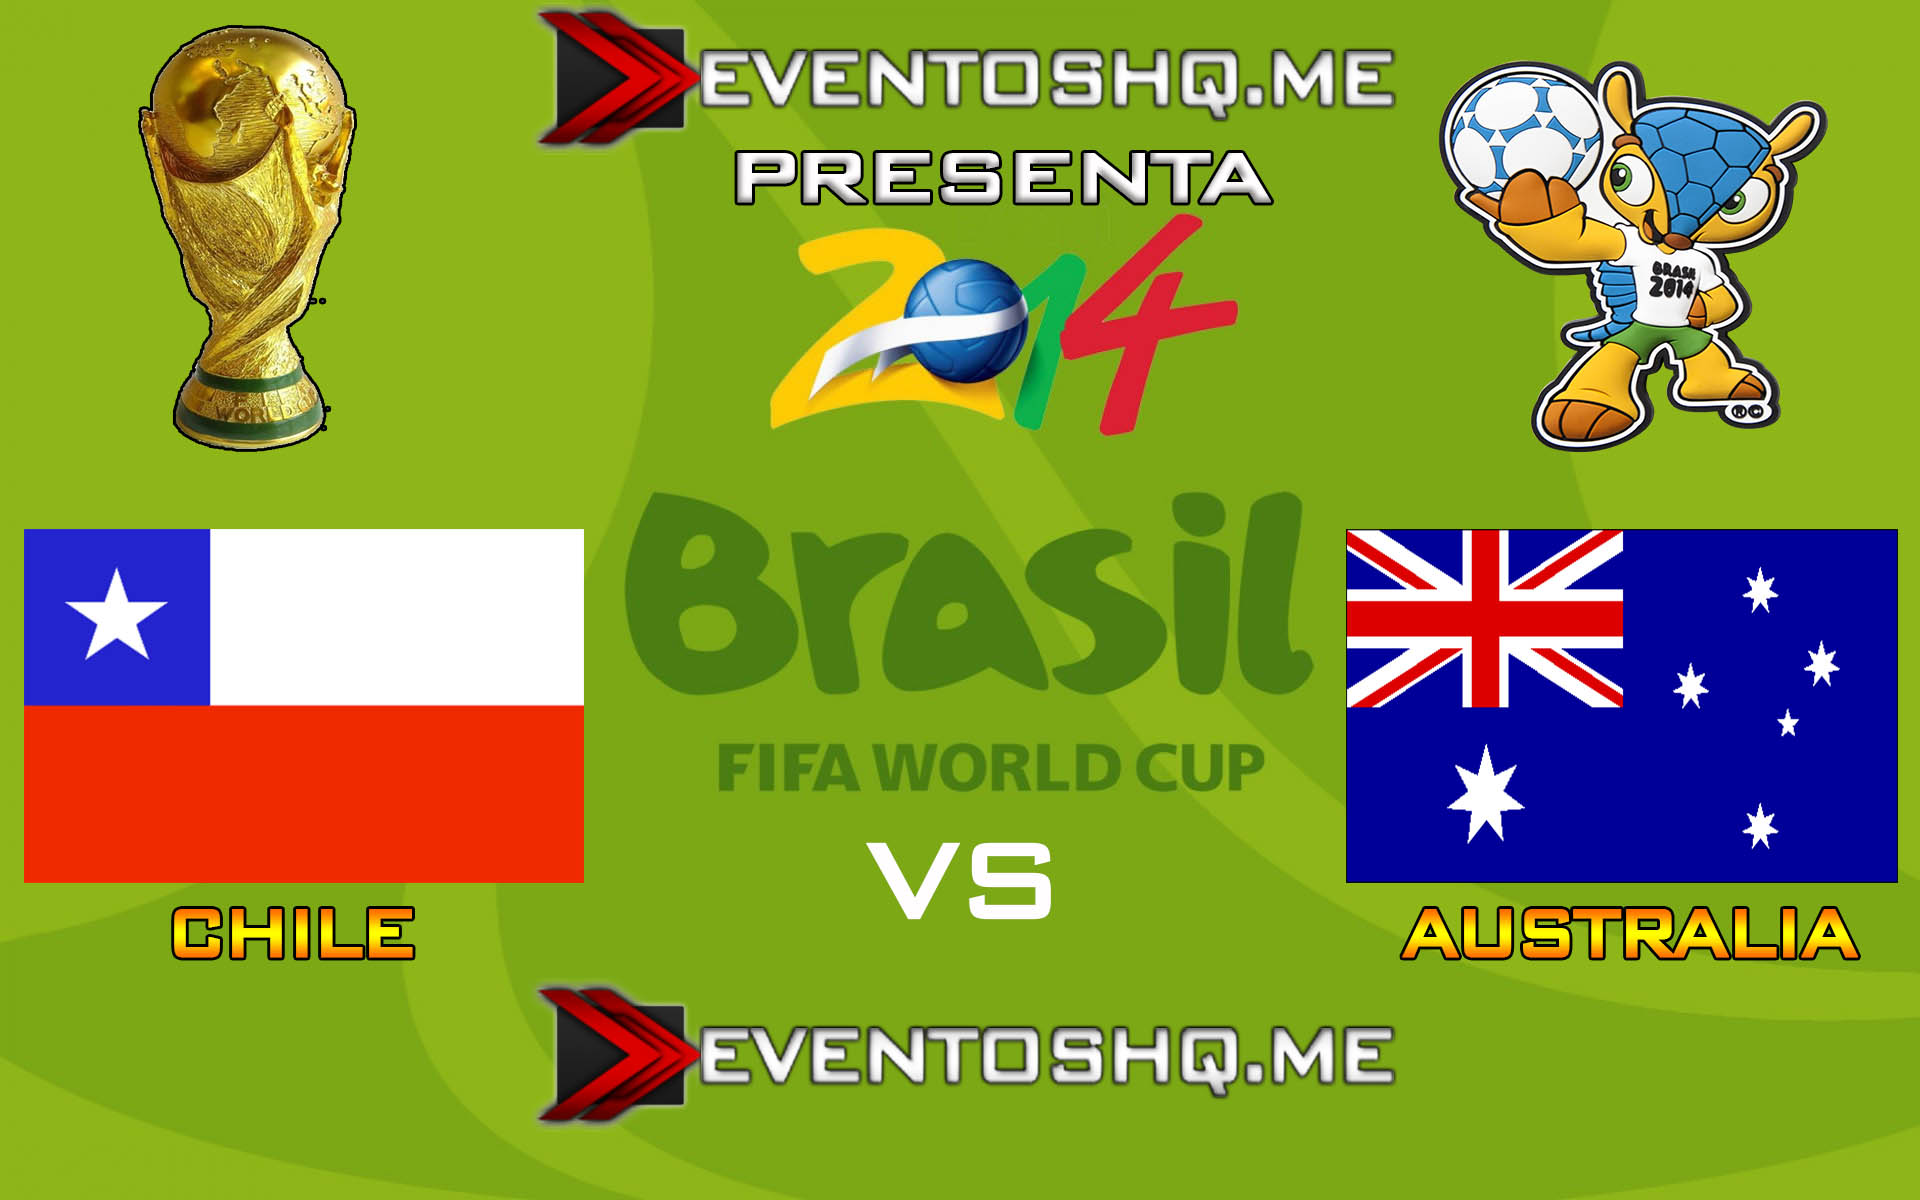 Ver en Vivo Chile vs Australia Mundial Brasil 2014 www.eventoshq.me